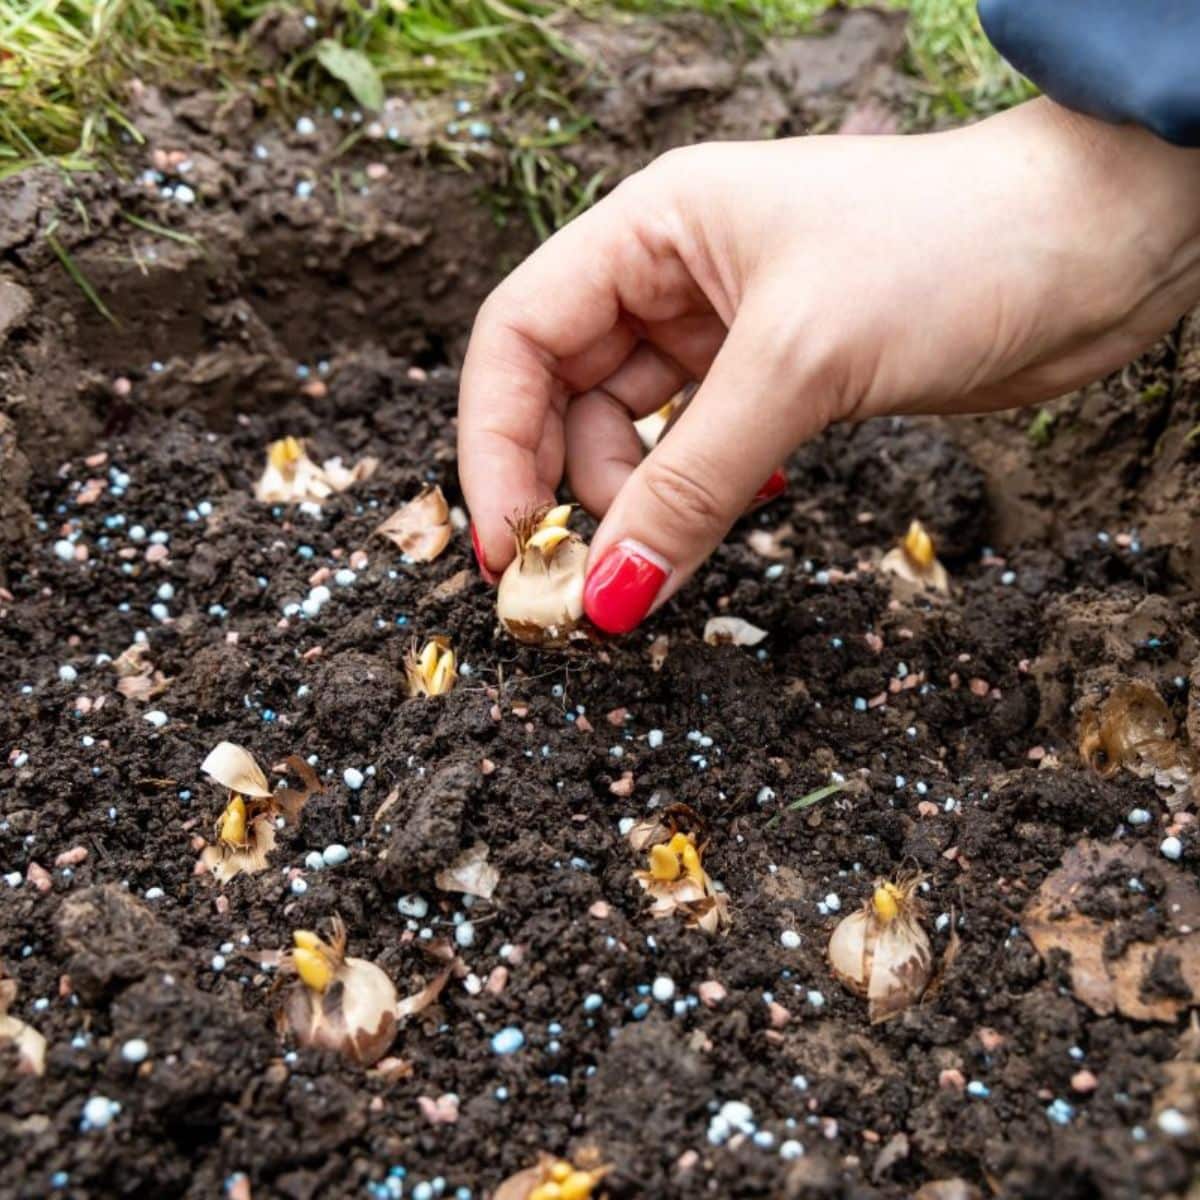 A gardener planting a flower bulb in the soil.